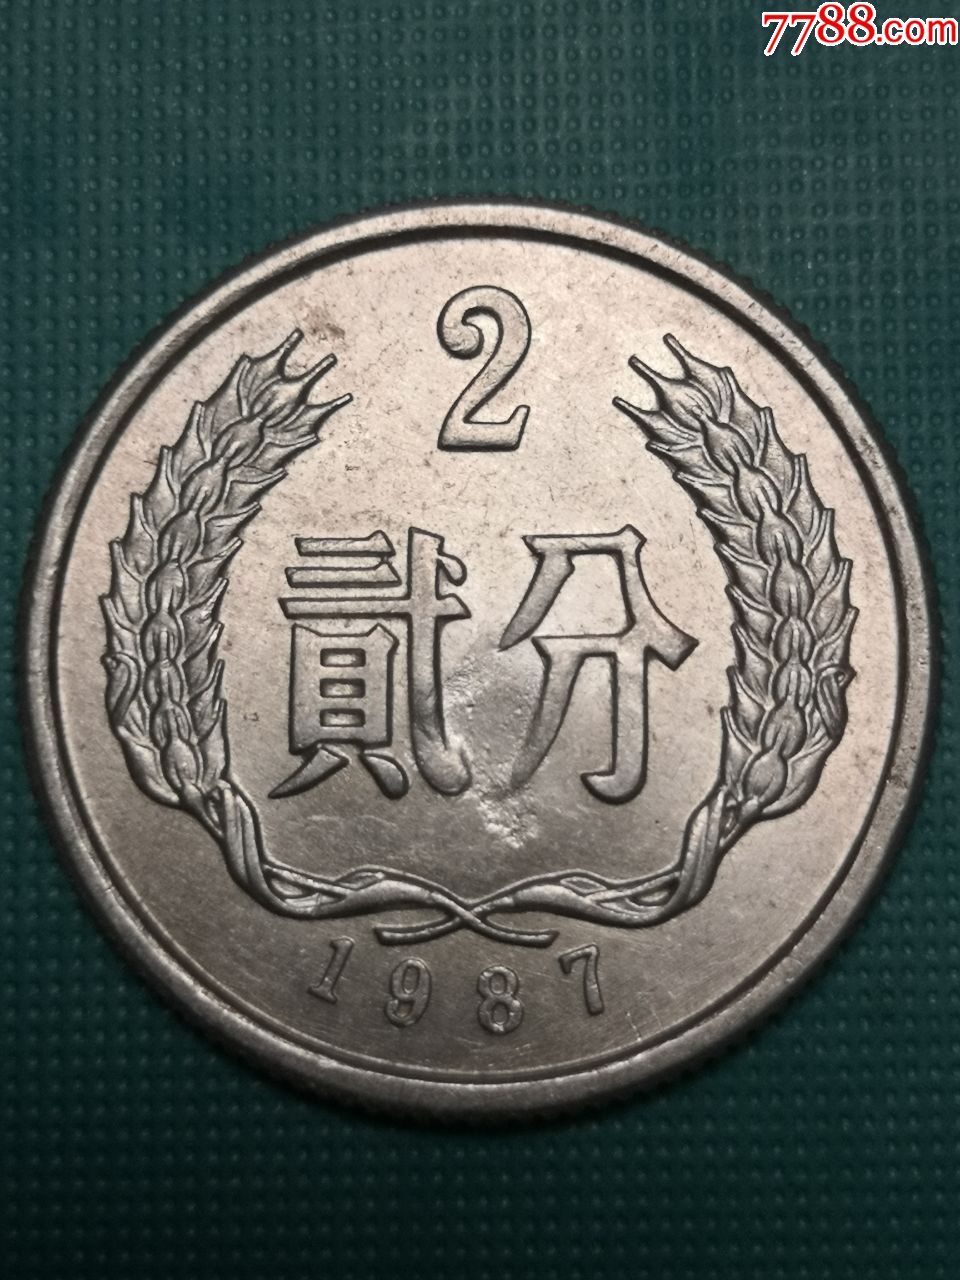 1987年2分硬币图片